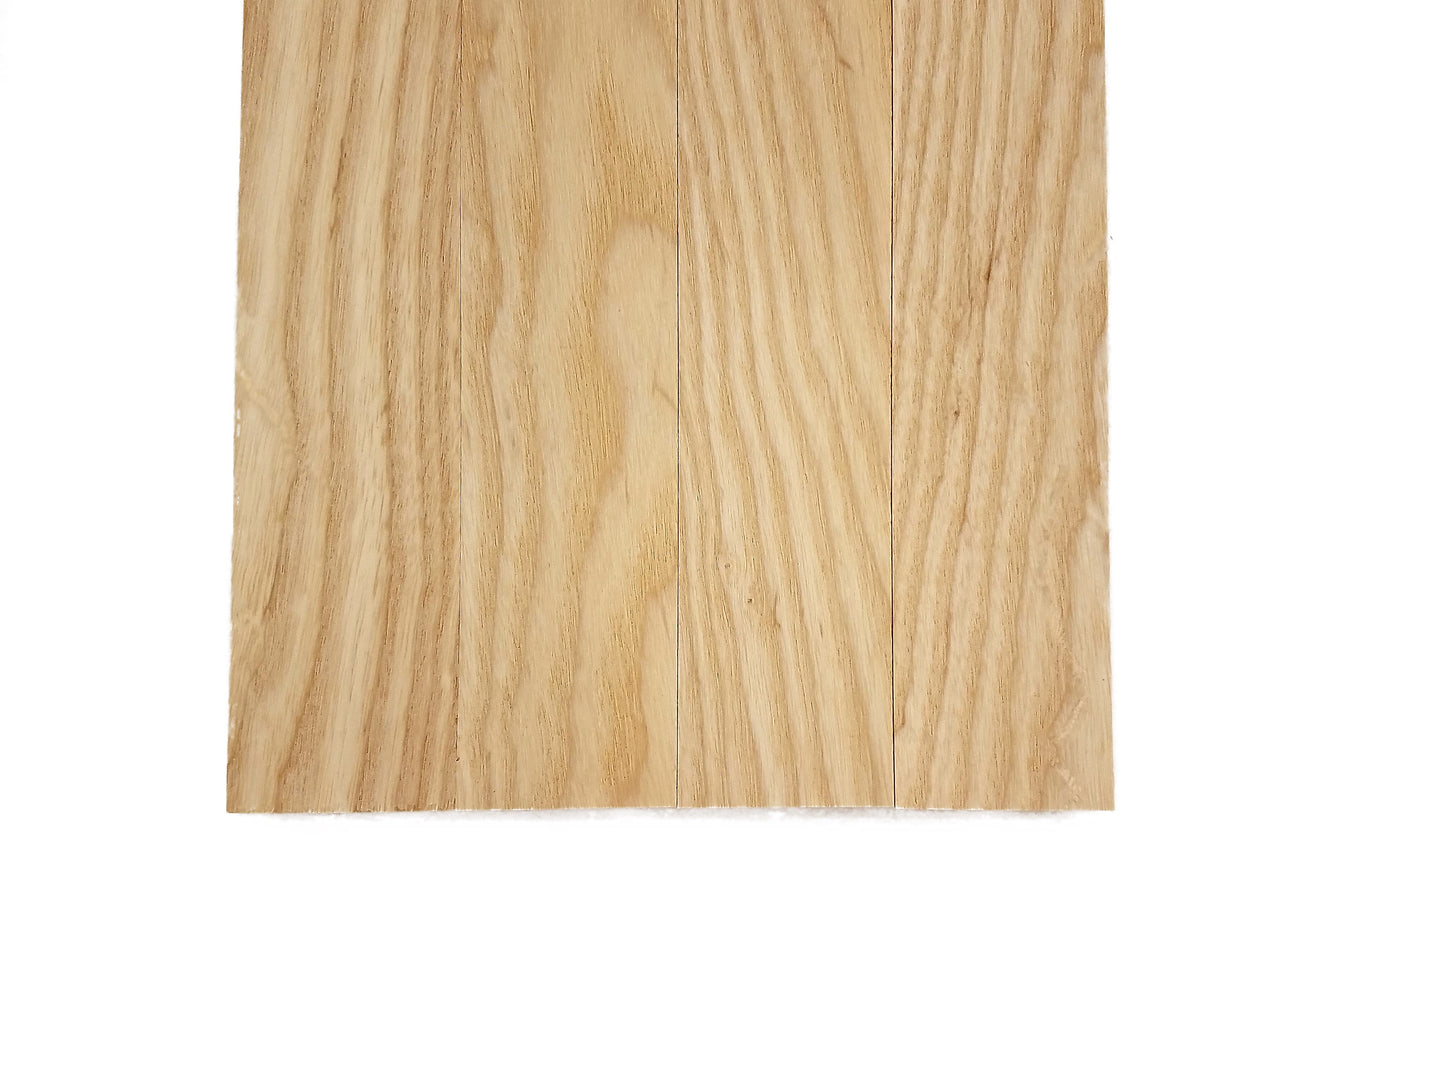 White Ash Lumber Board - 3/4" x 2" (4 Pcs)